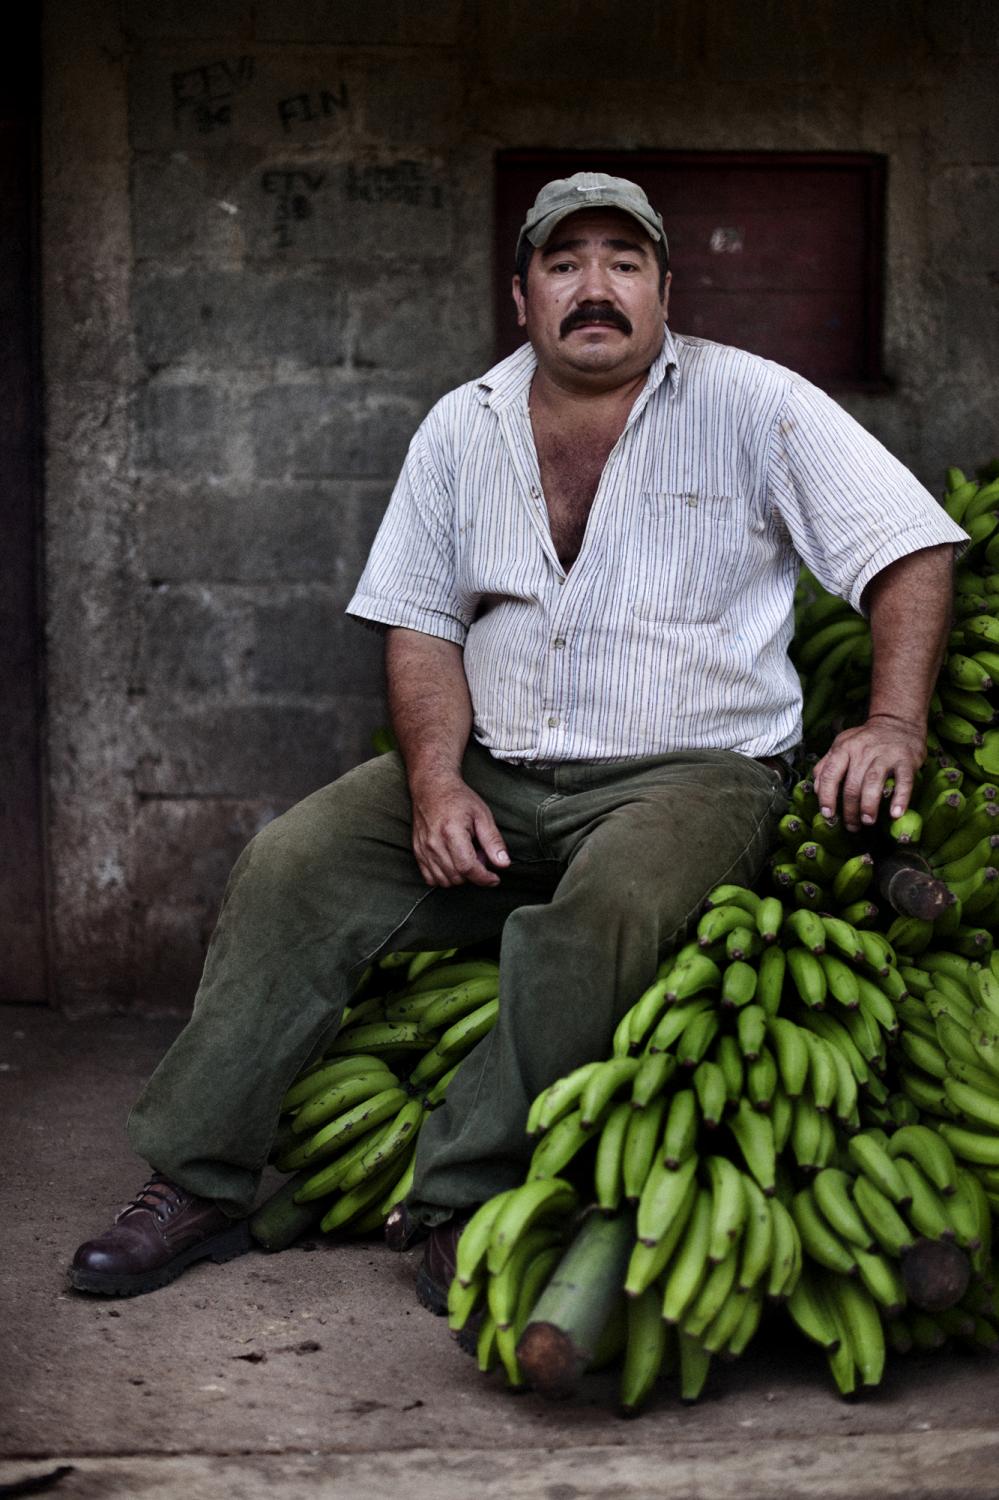 Microcredit / Central America - Jinotega, Nicaragua.
Comunidad los Horcones.
October...